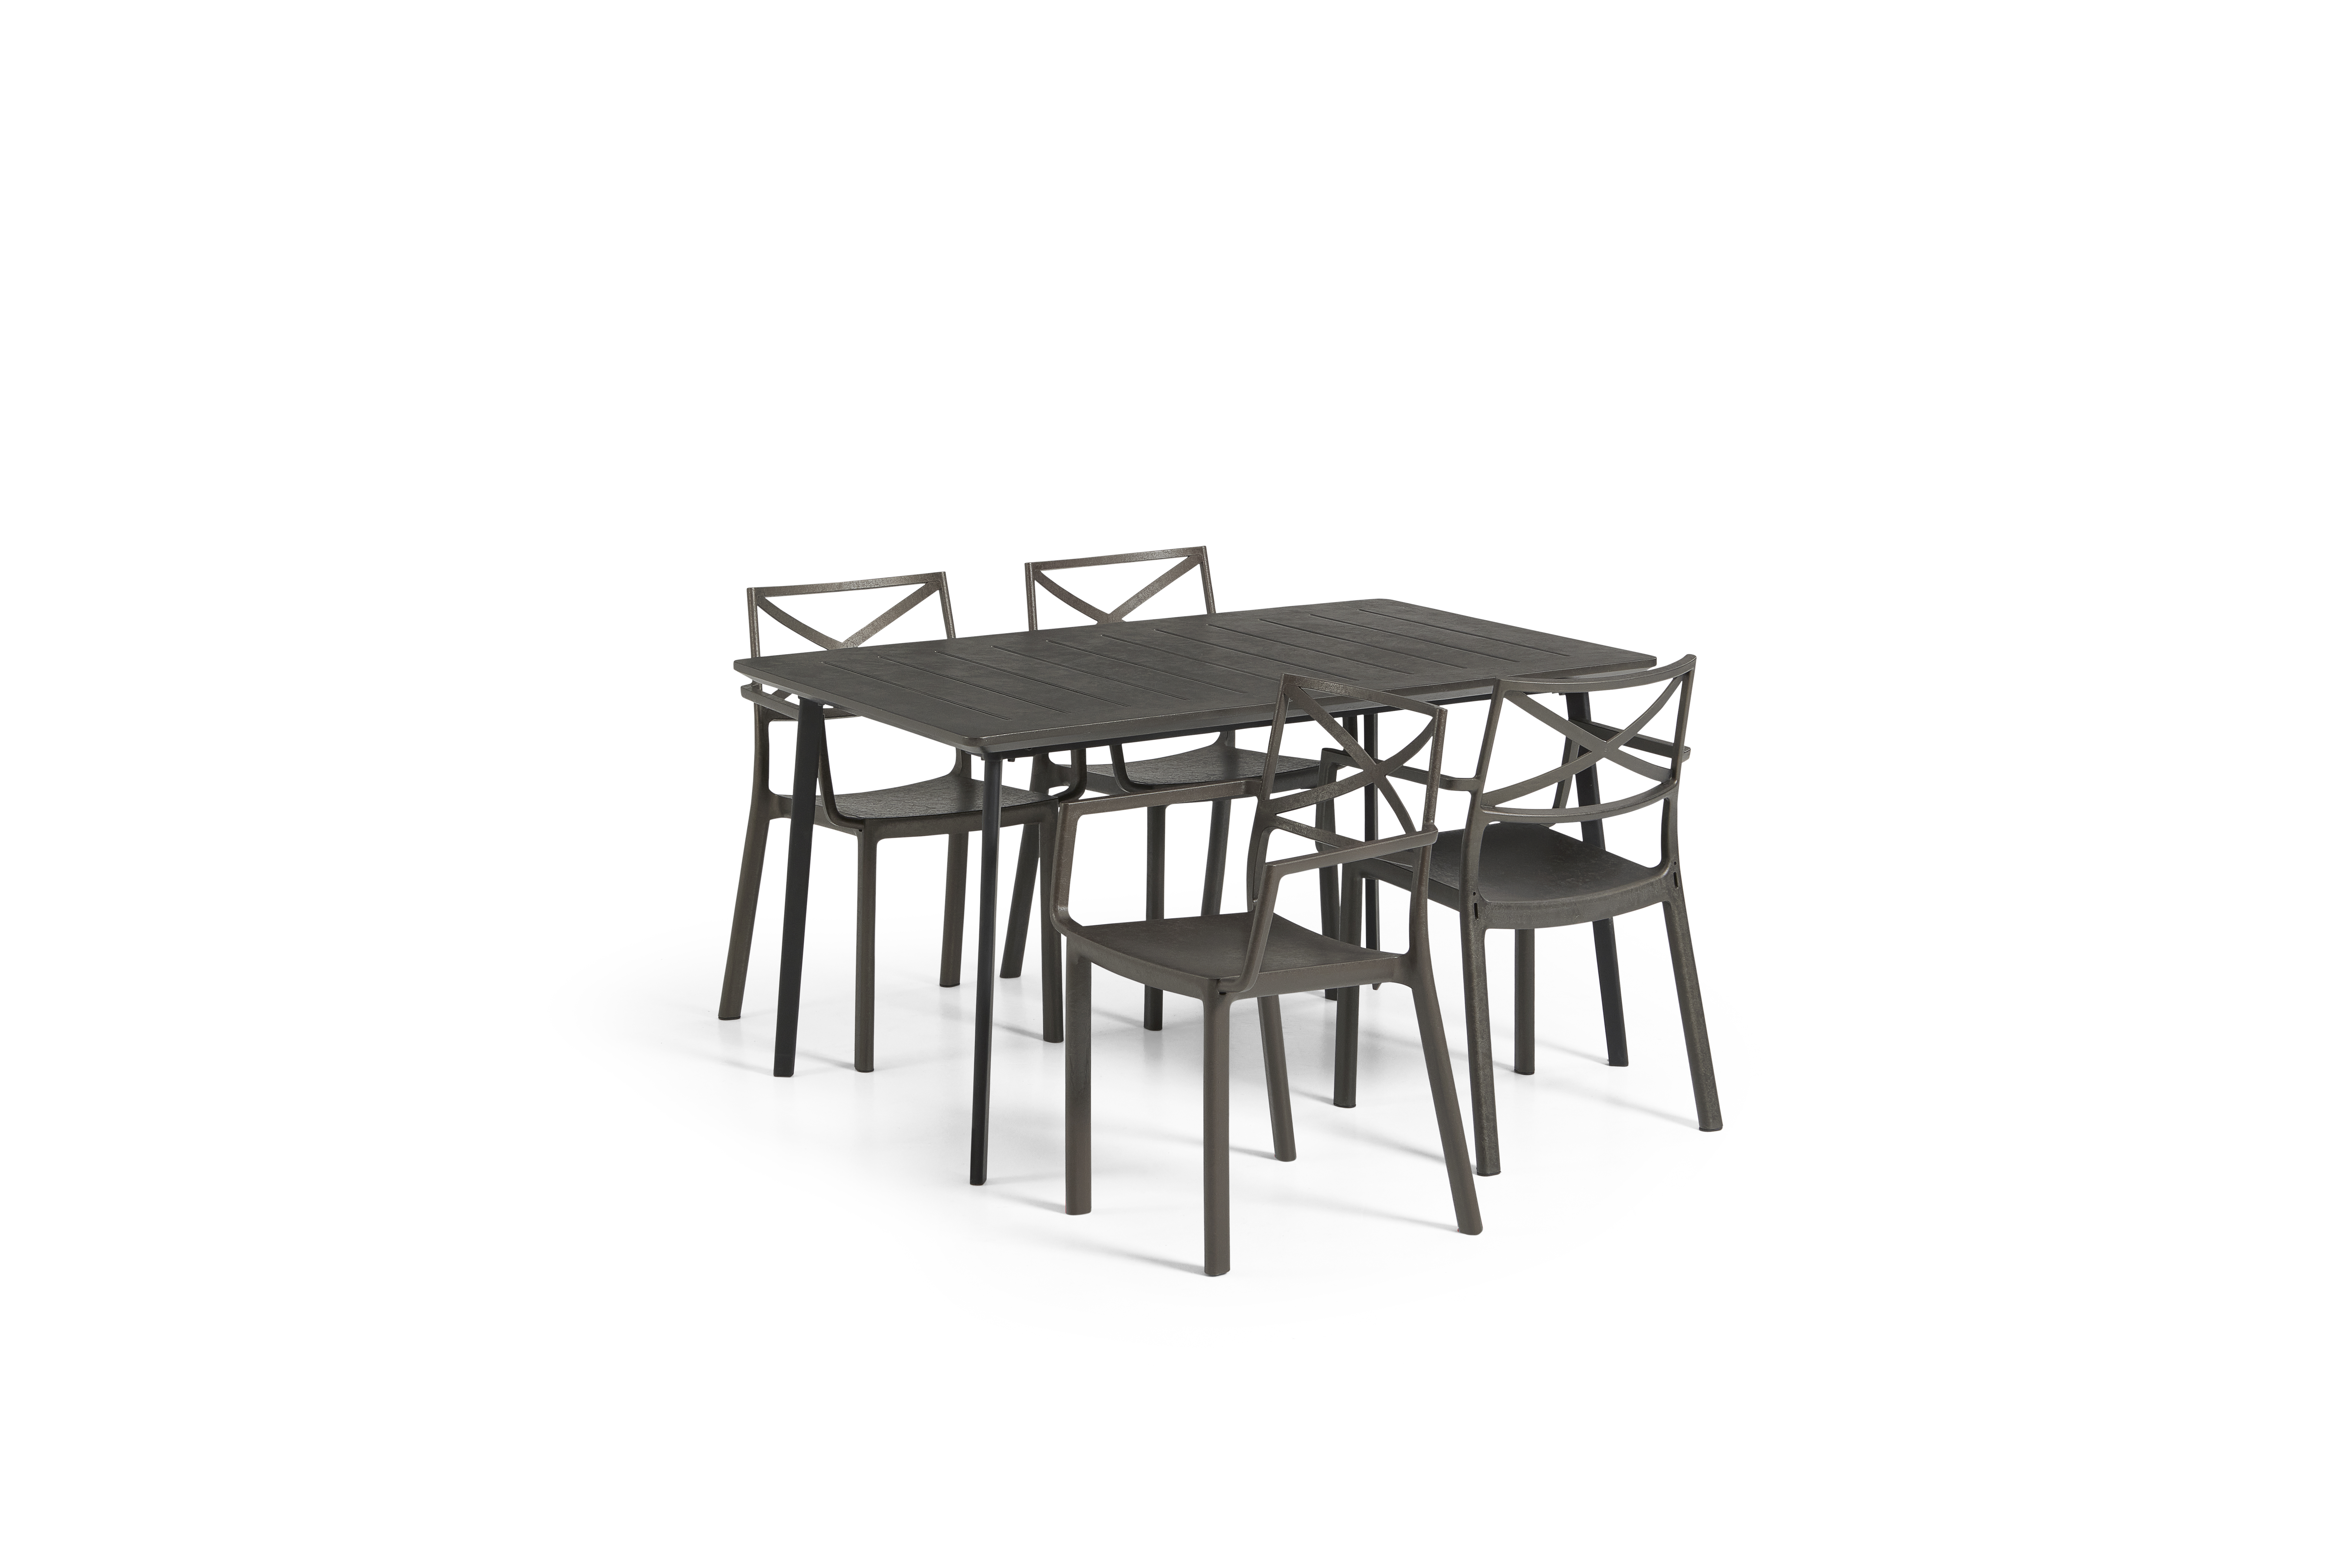 Keter - Metalea Garden Table 146 x 87 cm - Cast Iron Look - Black with 4 pcs. Metalix Garden Chair - Bronze - Stacked - Bundle